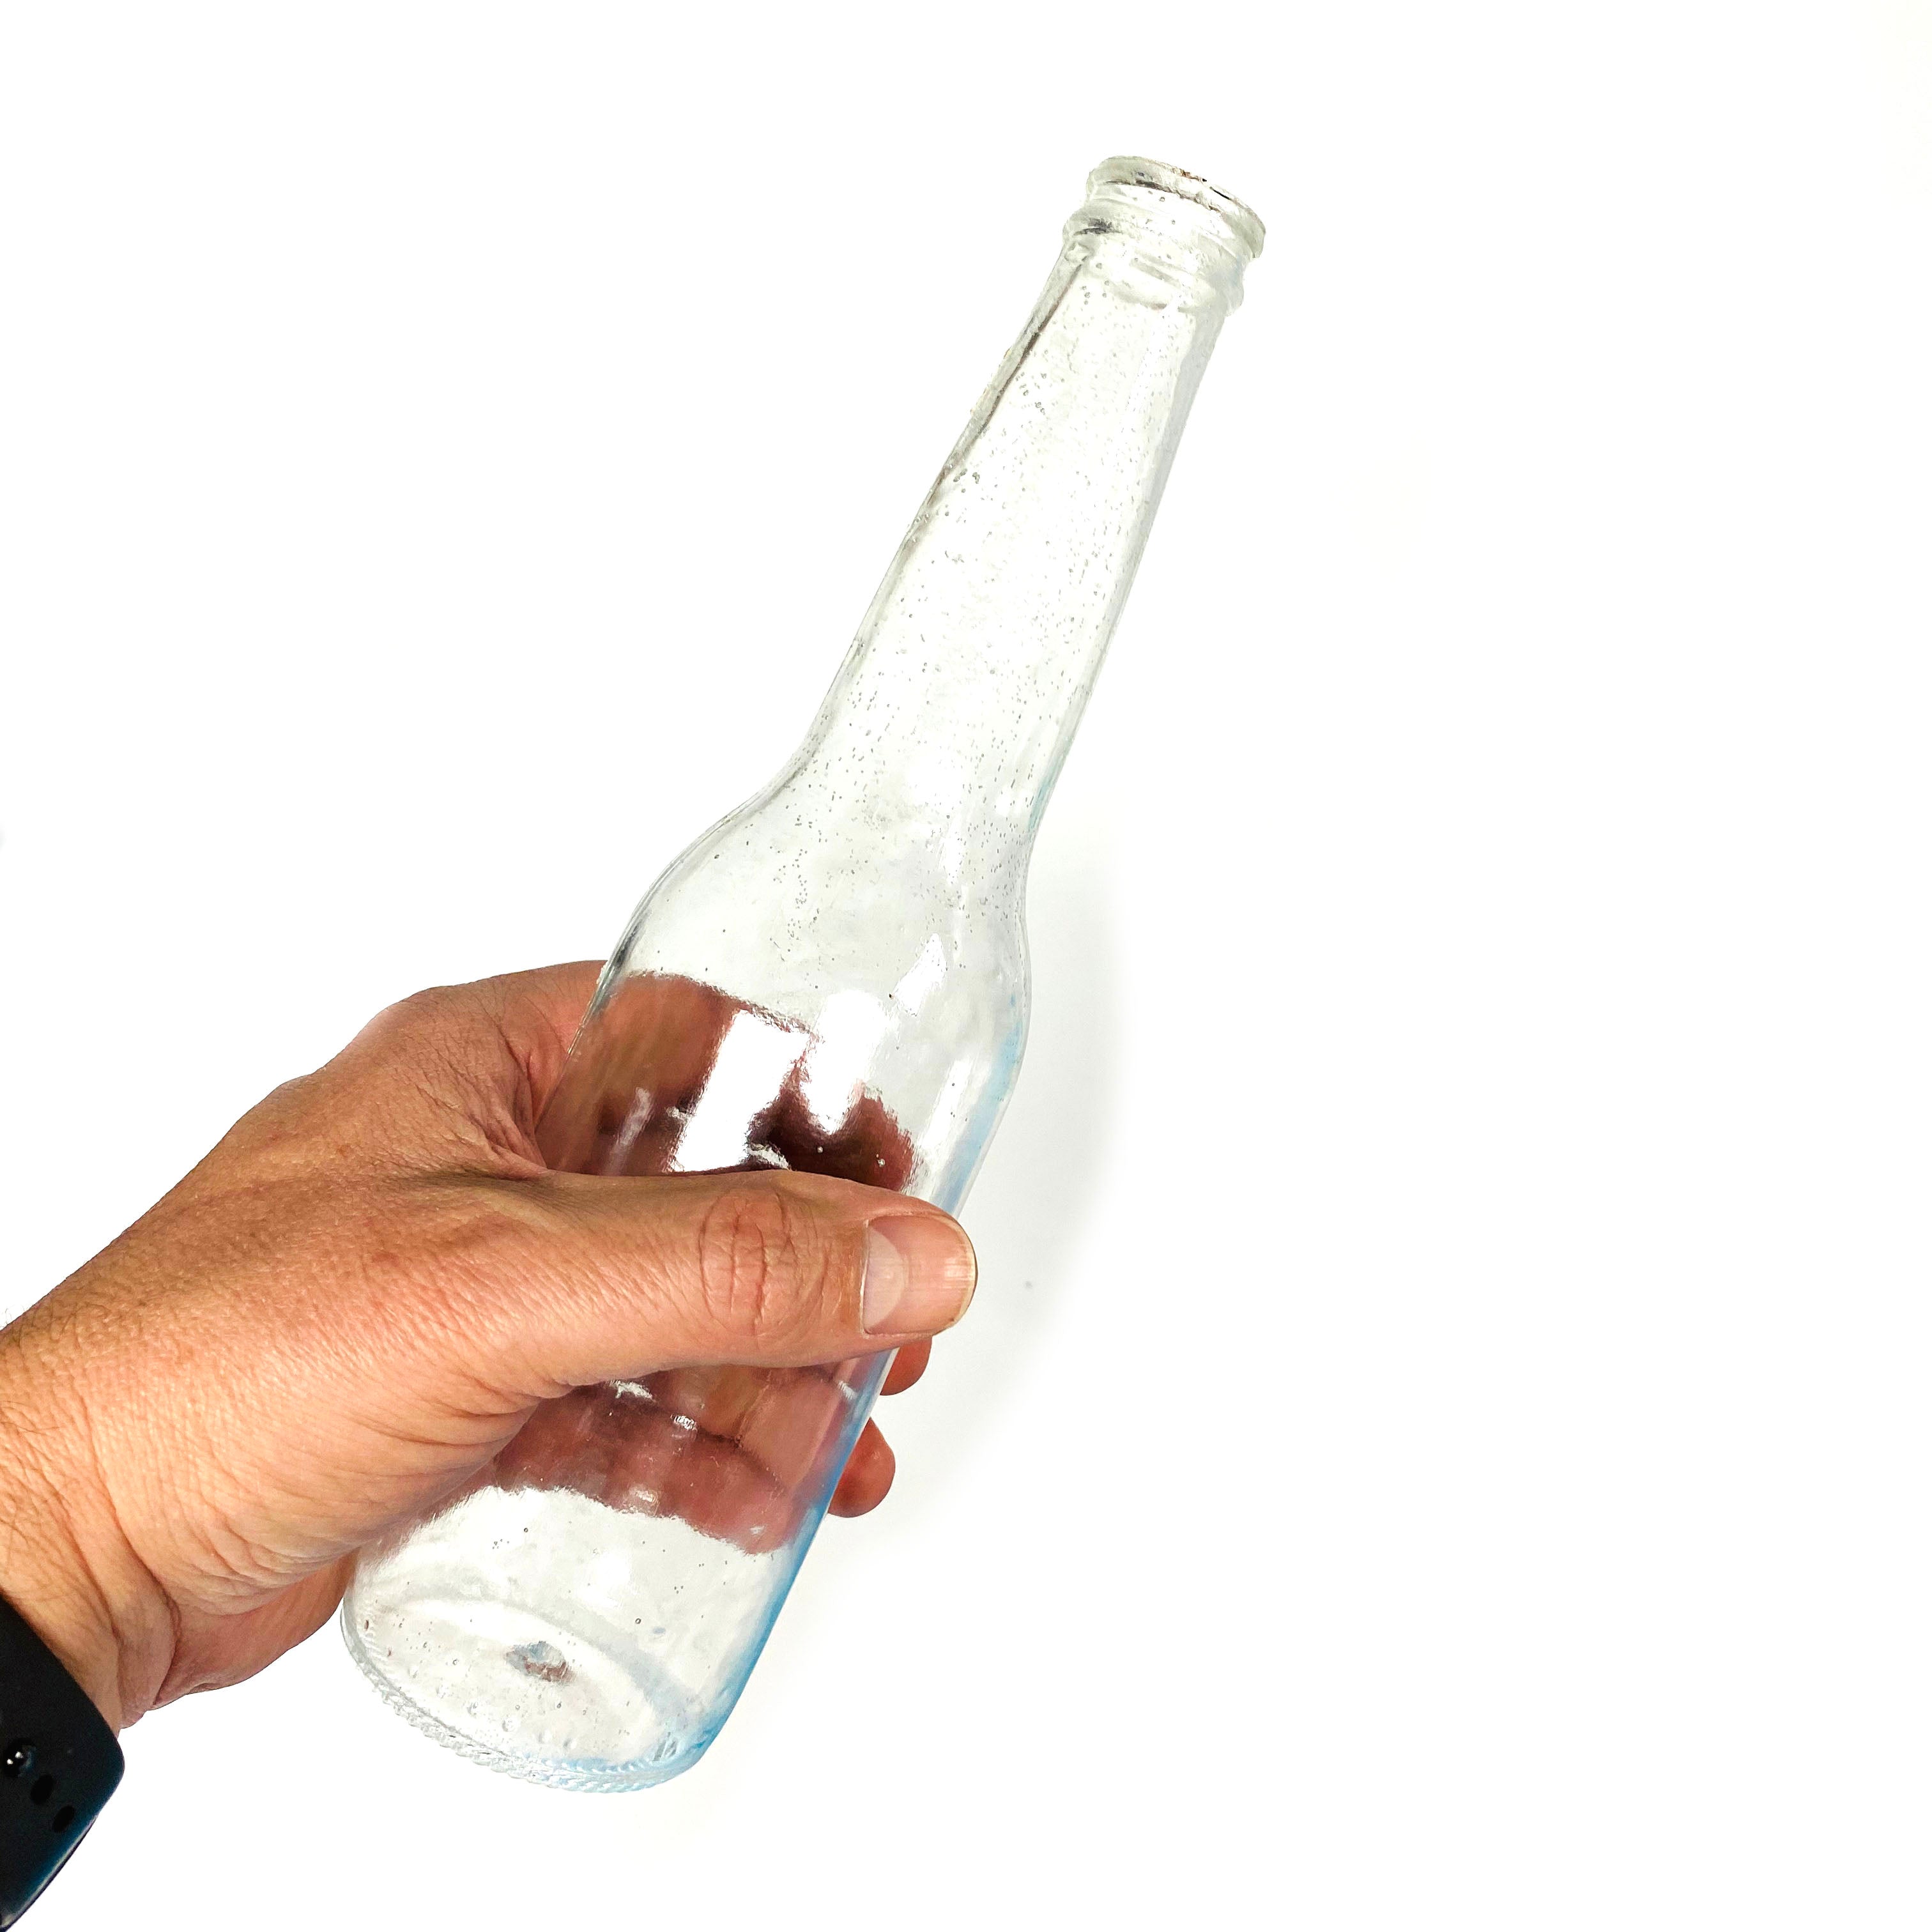 Breakaway Standard Beer or Soda Bottle Prop